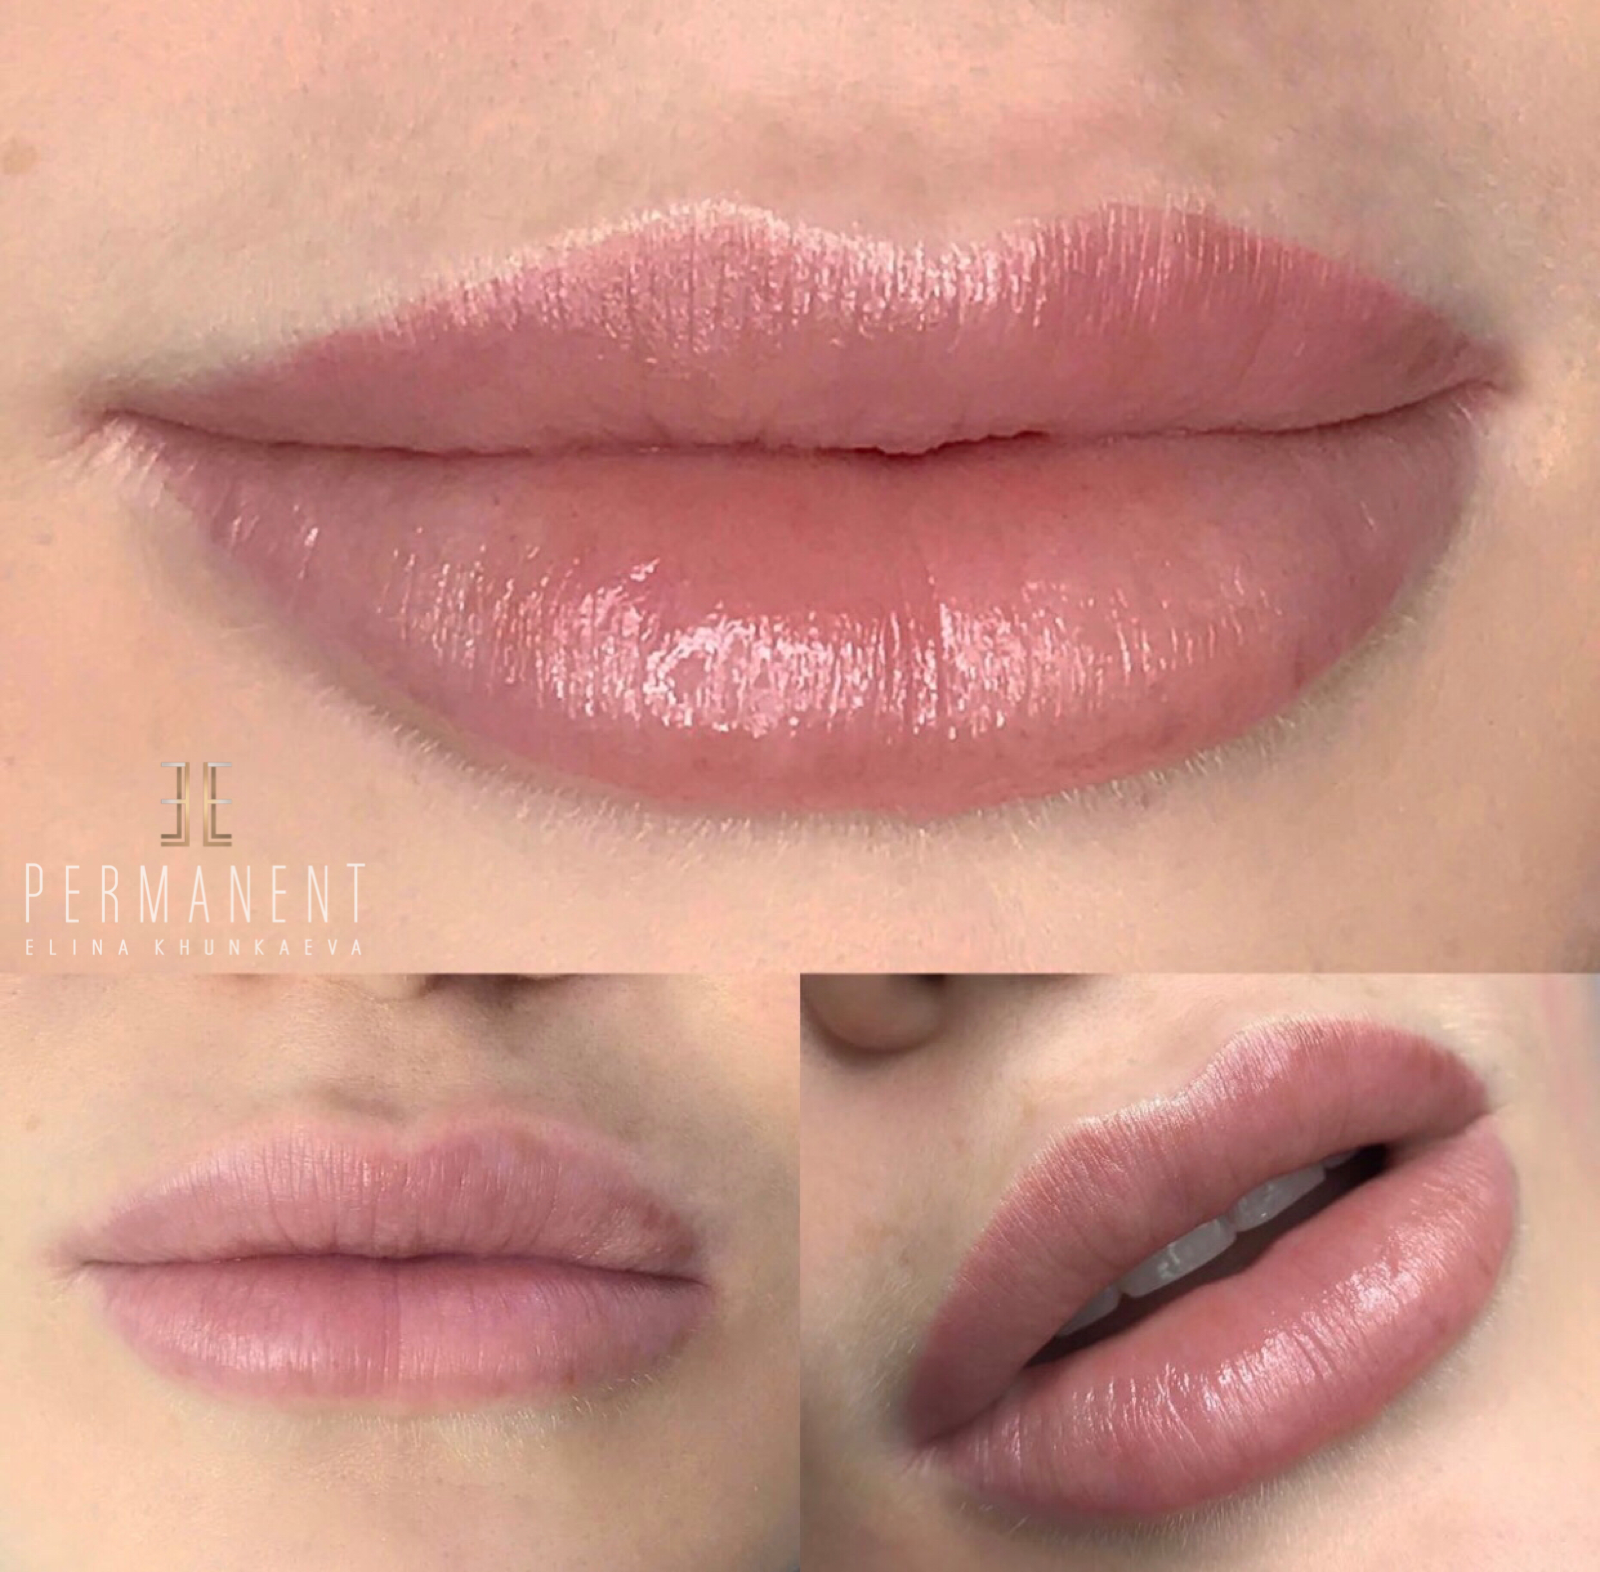 Перманент губ. Татуаж губ. Перманентный макияж губ. Перманентный макияж губ Акварельная техника. Акварельные губы до и после